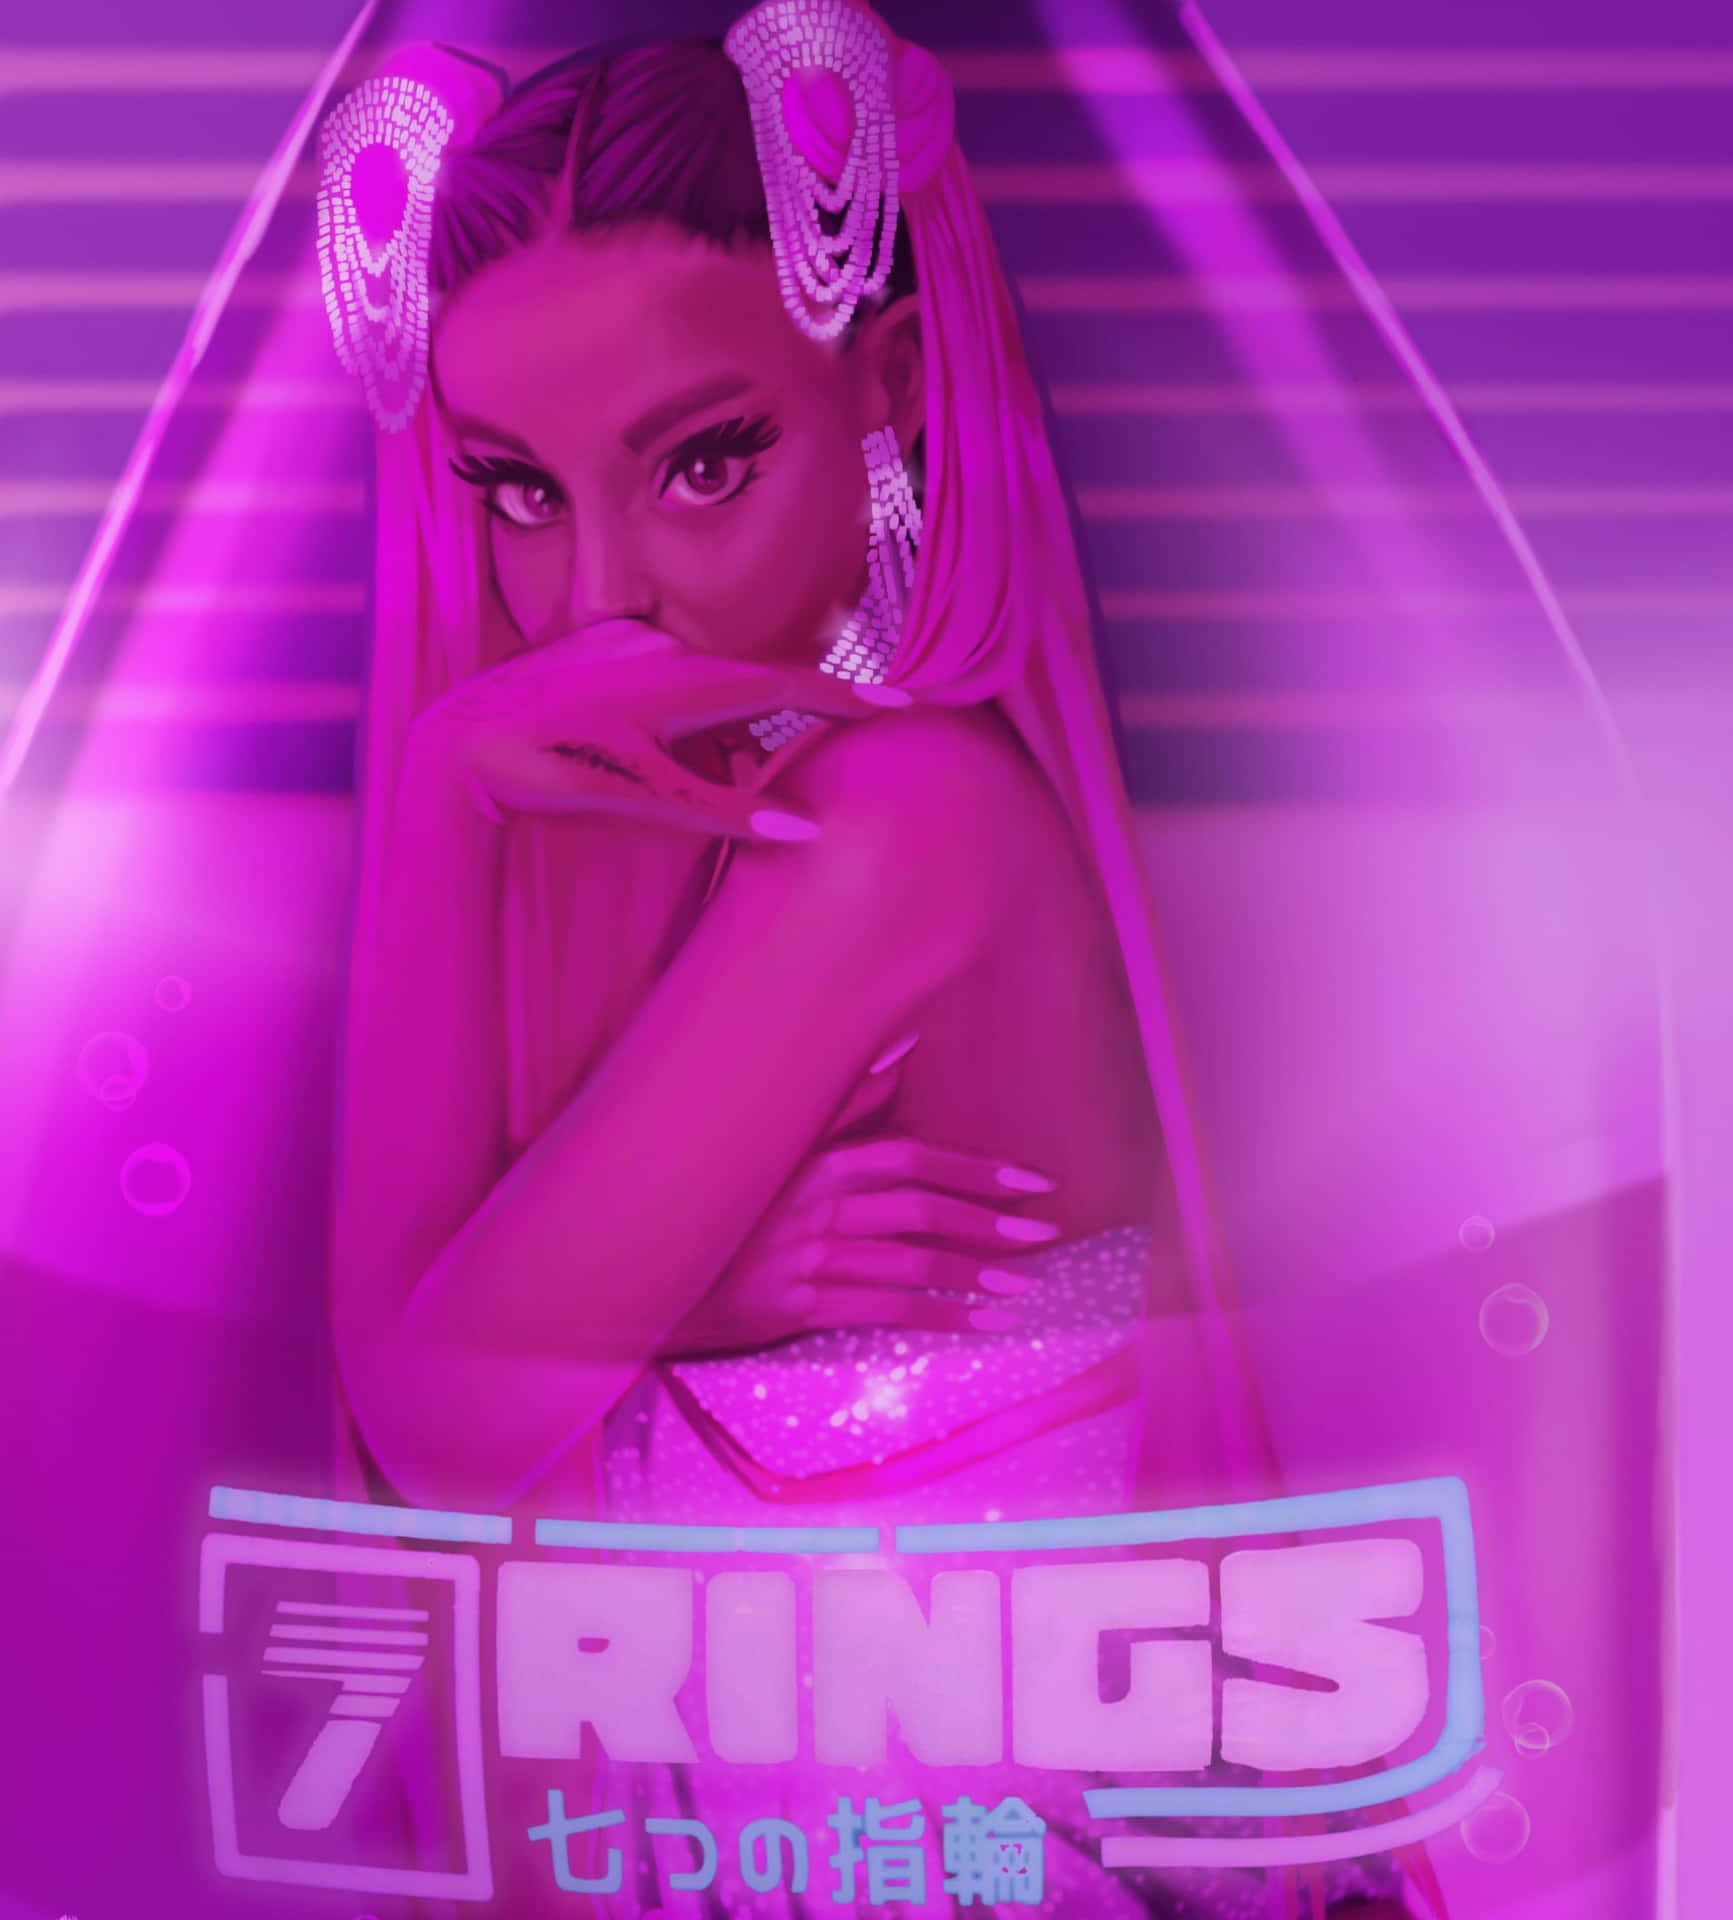 Ariana Grande - 7 rings (OC version ) Mfg53 - Illustrations ART street